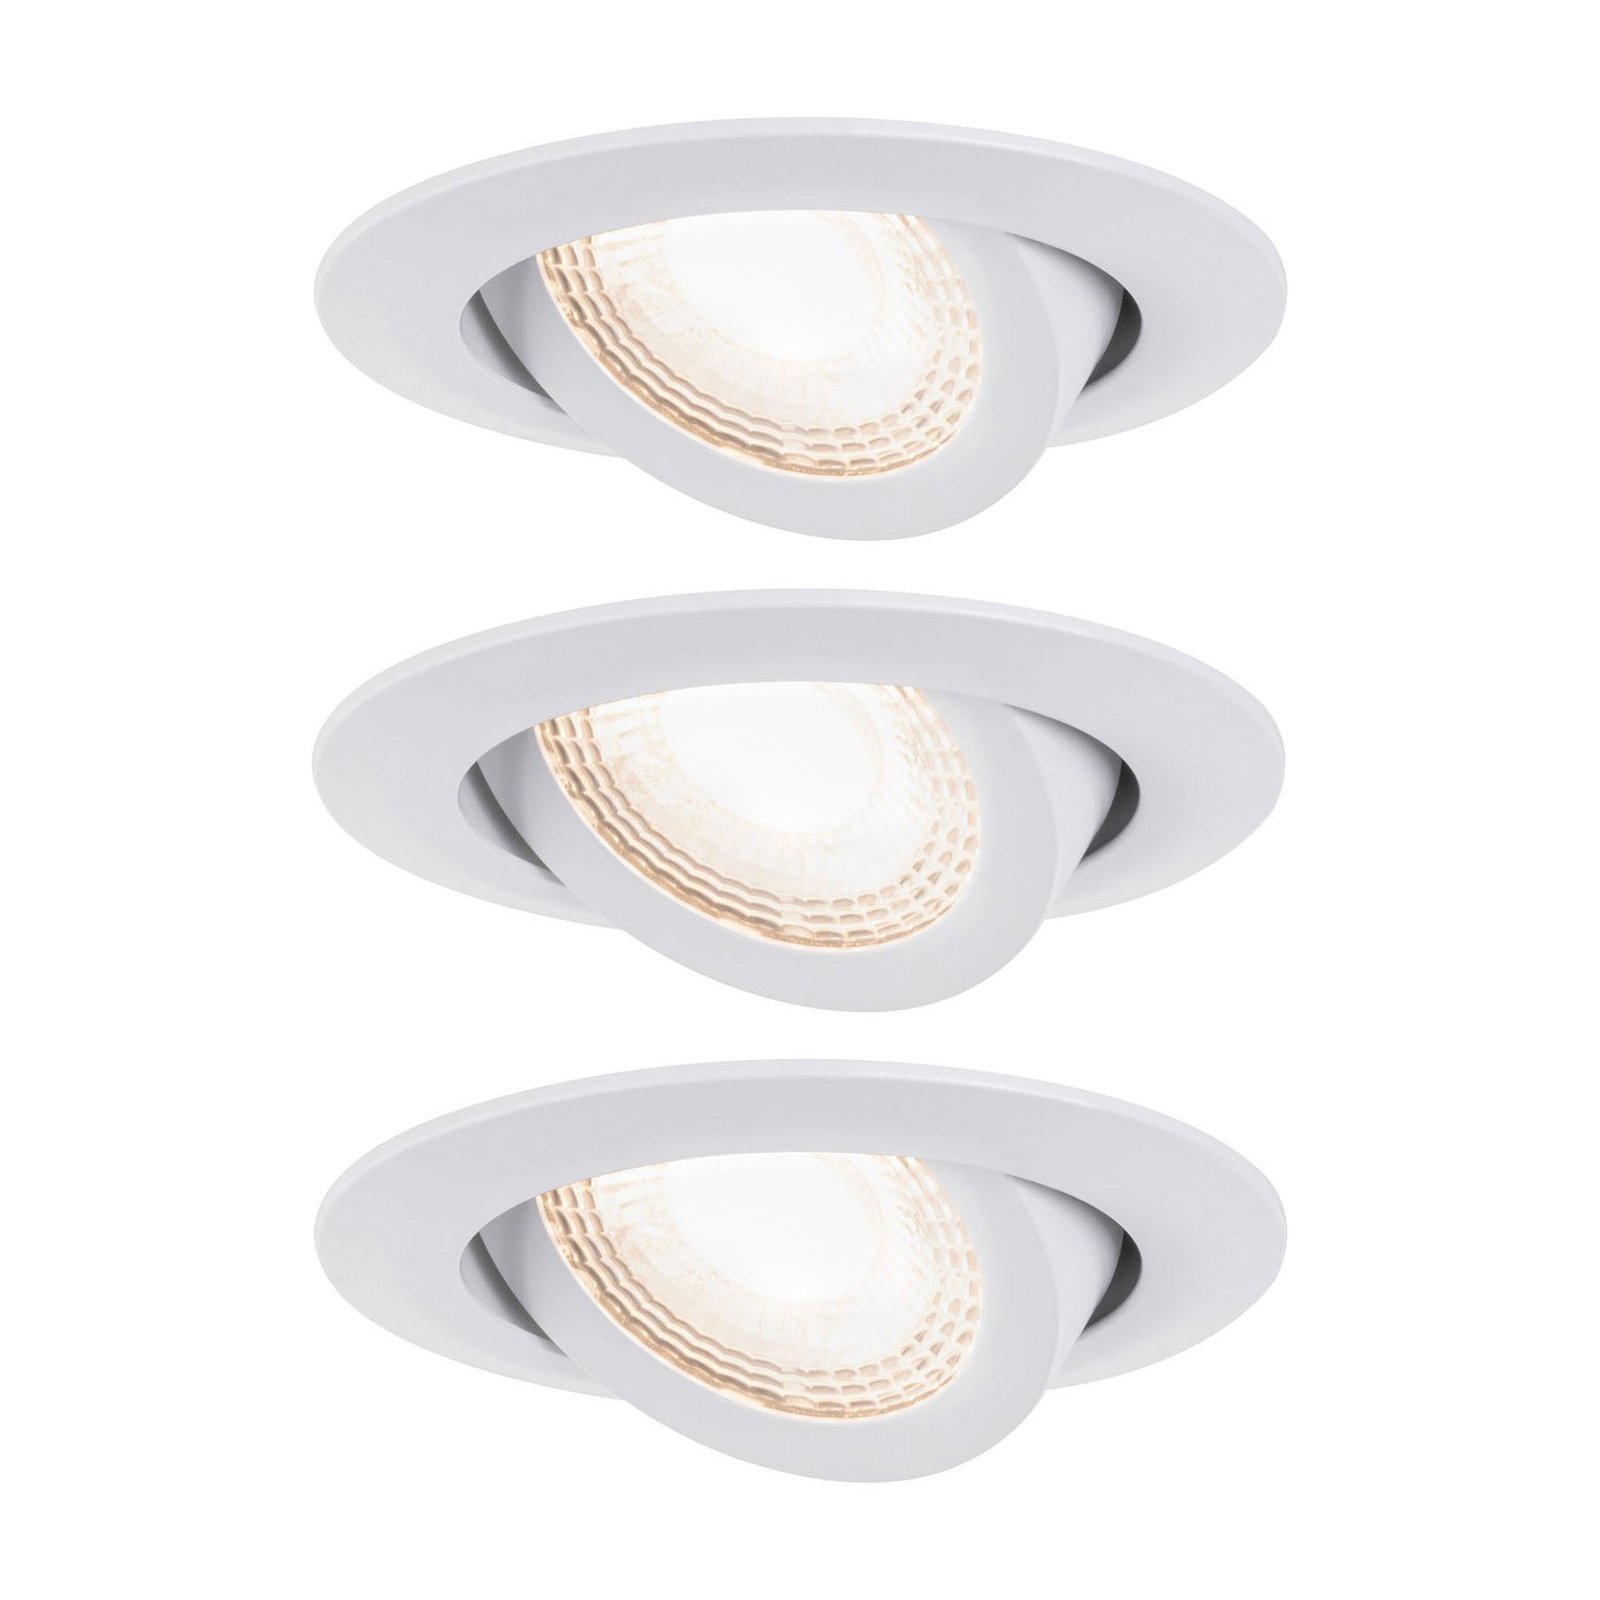 Paulmann 92985 LED downlight 3 x 6 W, matt white